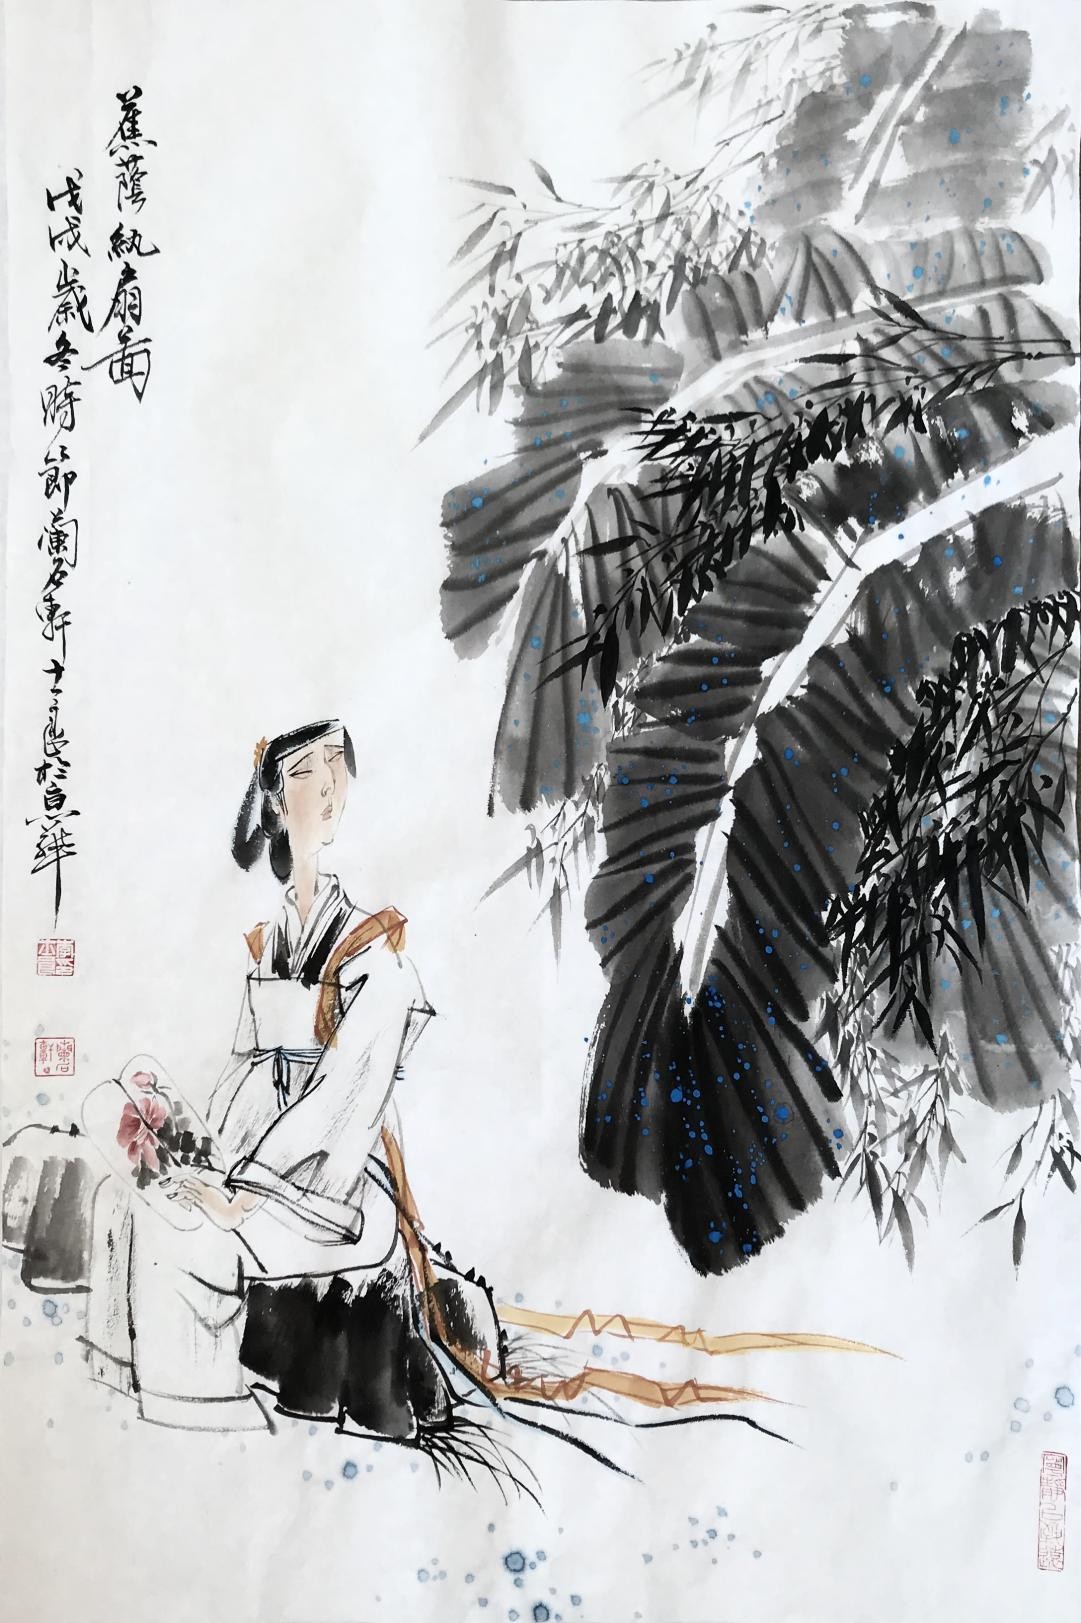 中国画家李士良水墨人物画作品走进双语国际期刊《中国与俄罗斯》(图4)